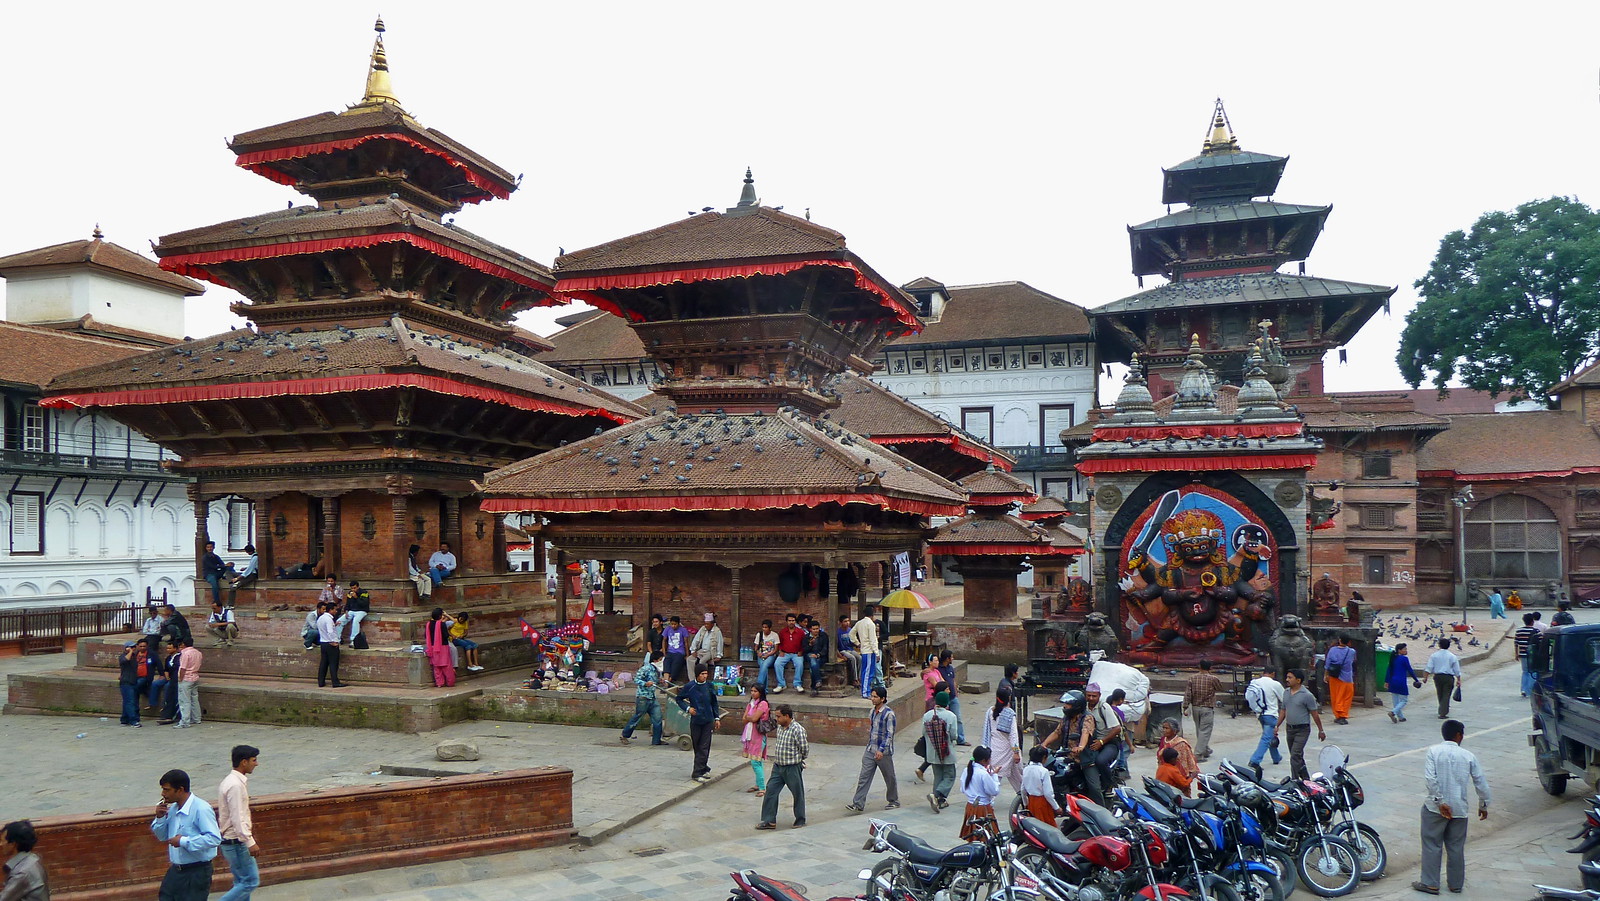 Nepal - Kathmandu - Durbar Square - 209